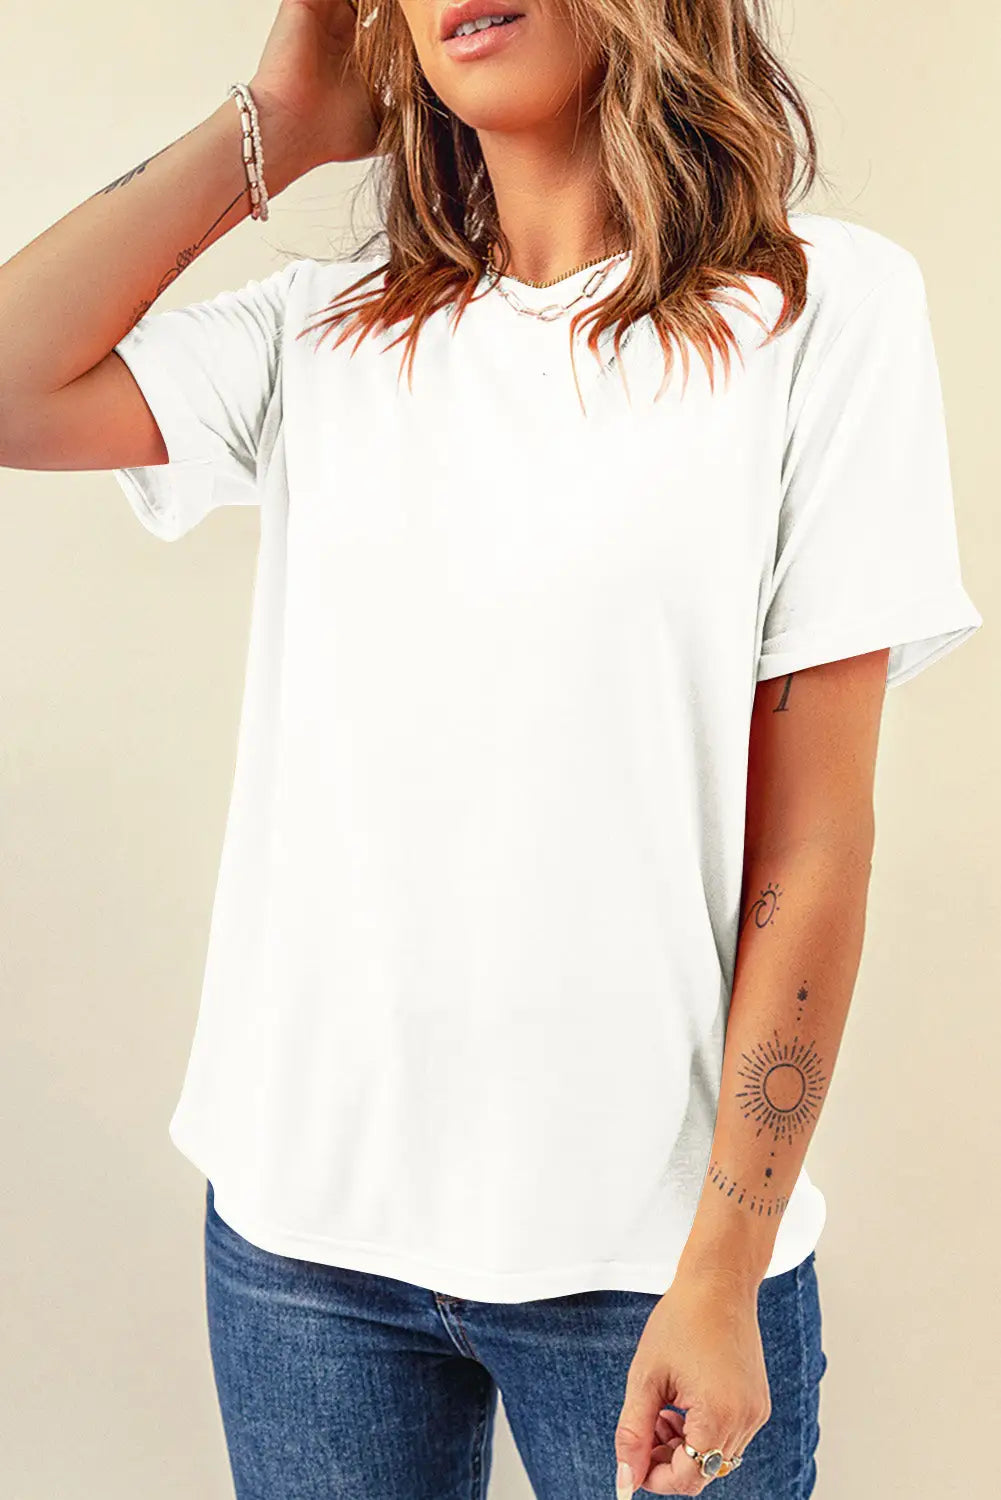 Khaki casual plain crew neck tee - white / s / 62% polyester + 32% cotton + 6% elastane - t-shirts